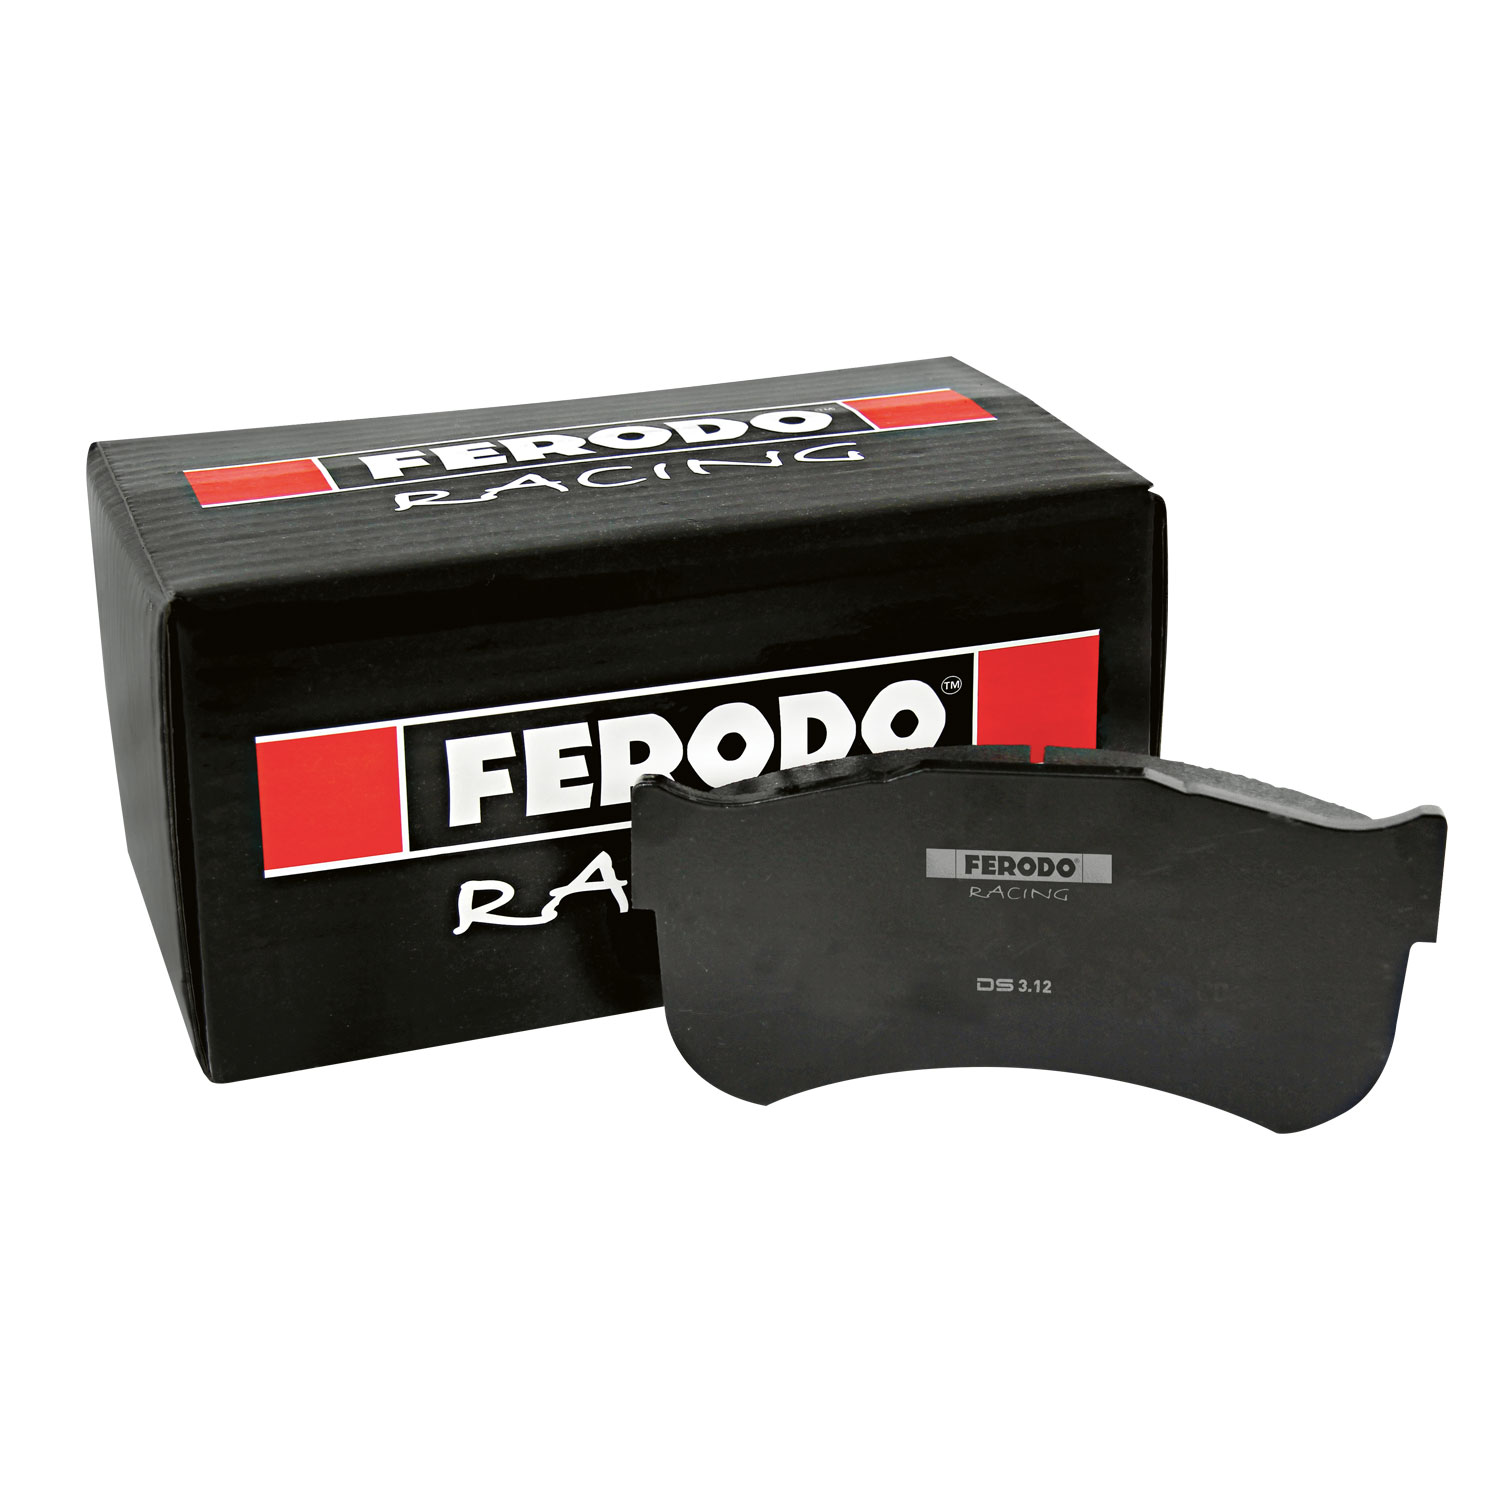 FERODO ds2500. Ds3000+03 FERODO. FERODO Racing ds3000 frp219r. Тормозные колодки Феродо.